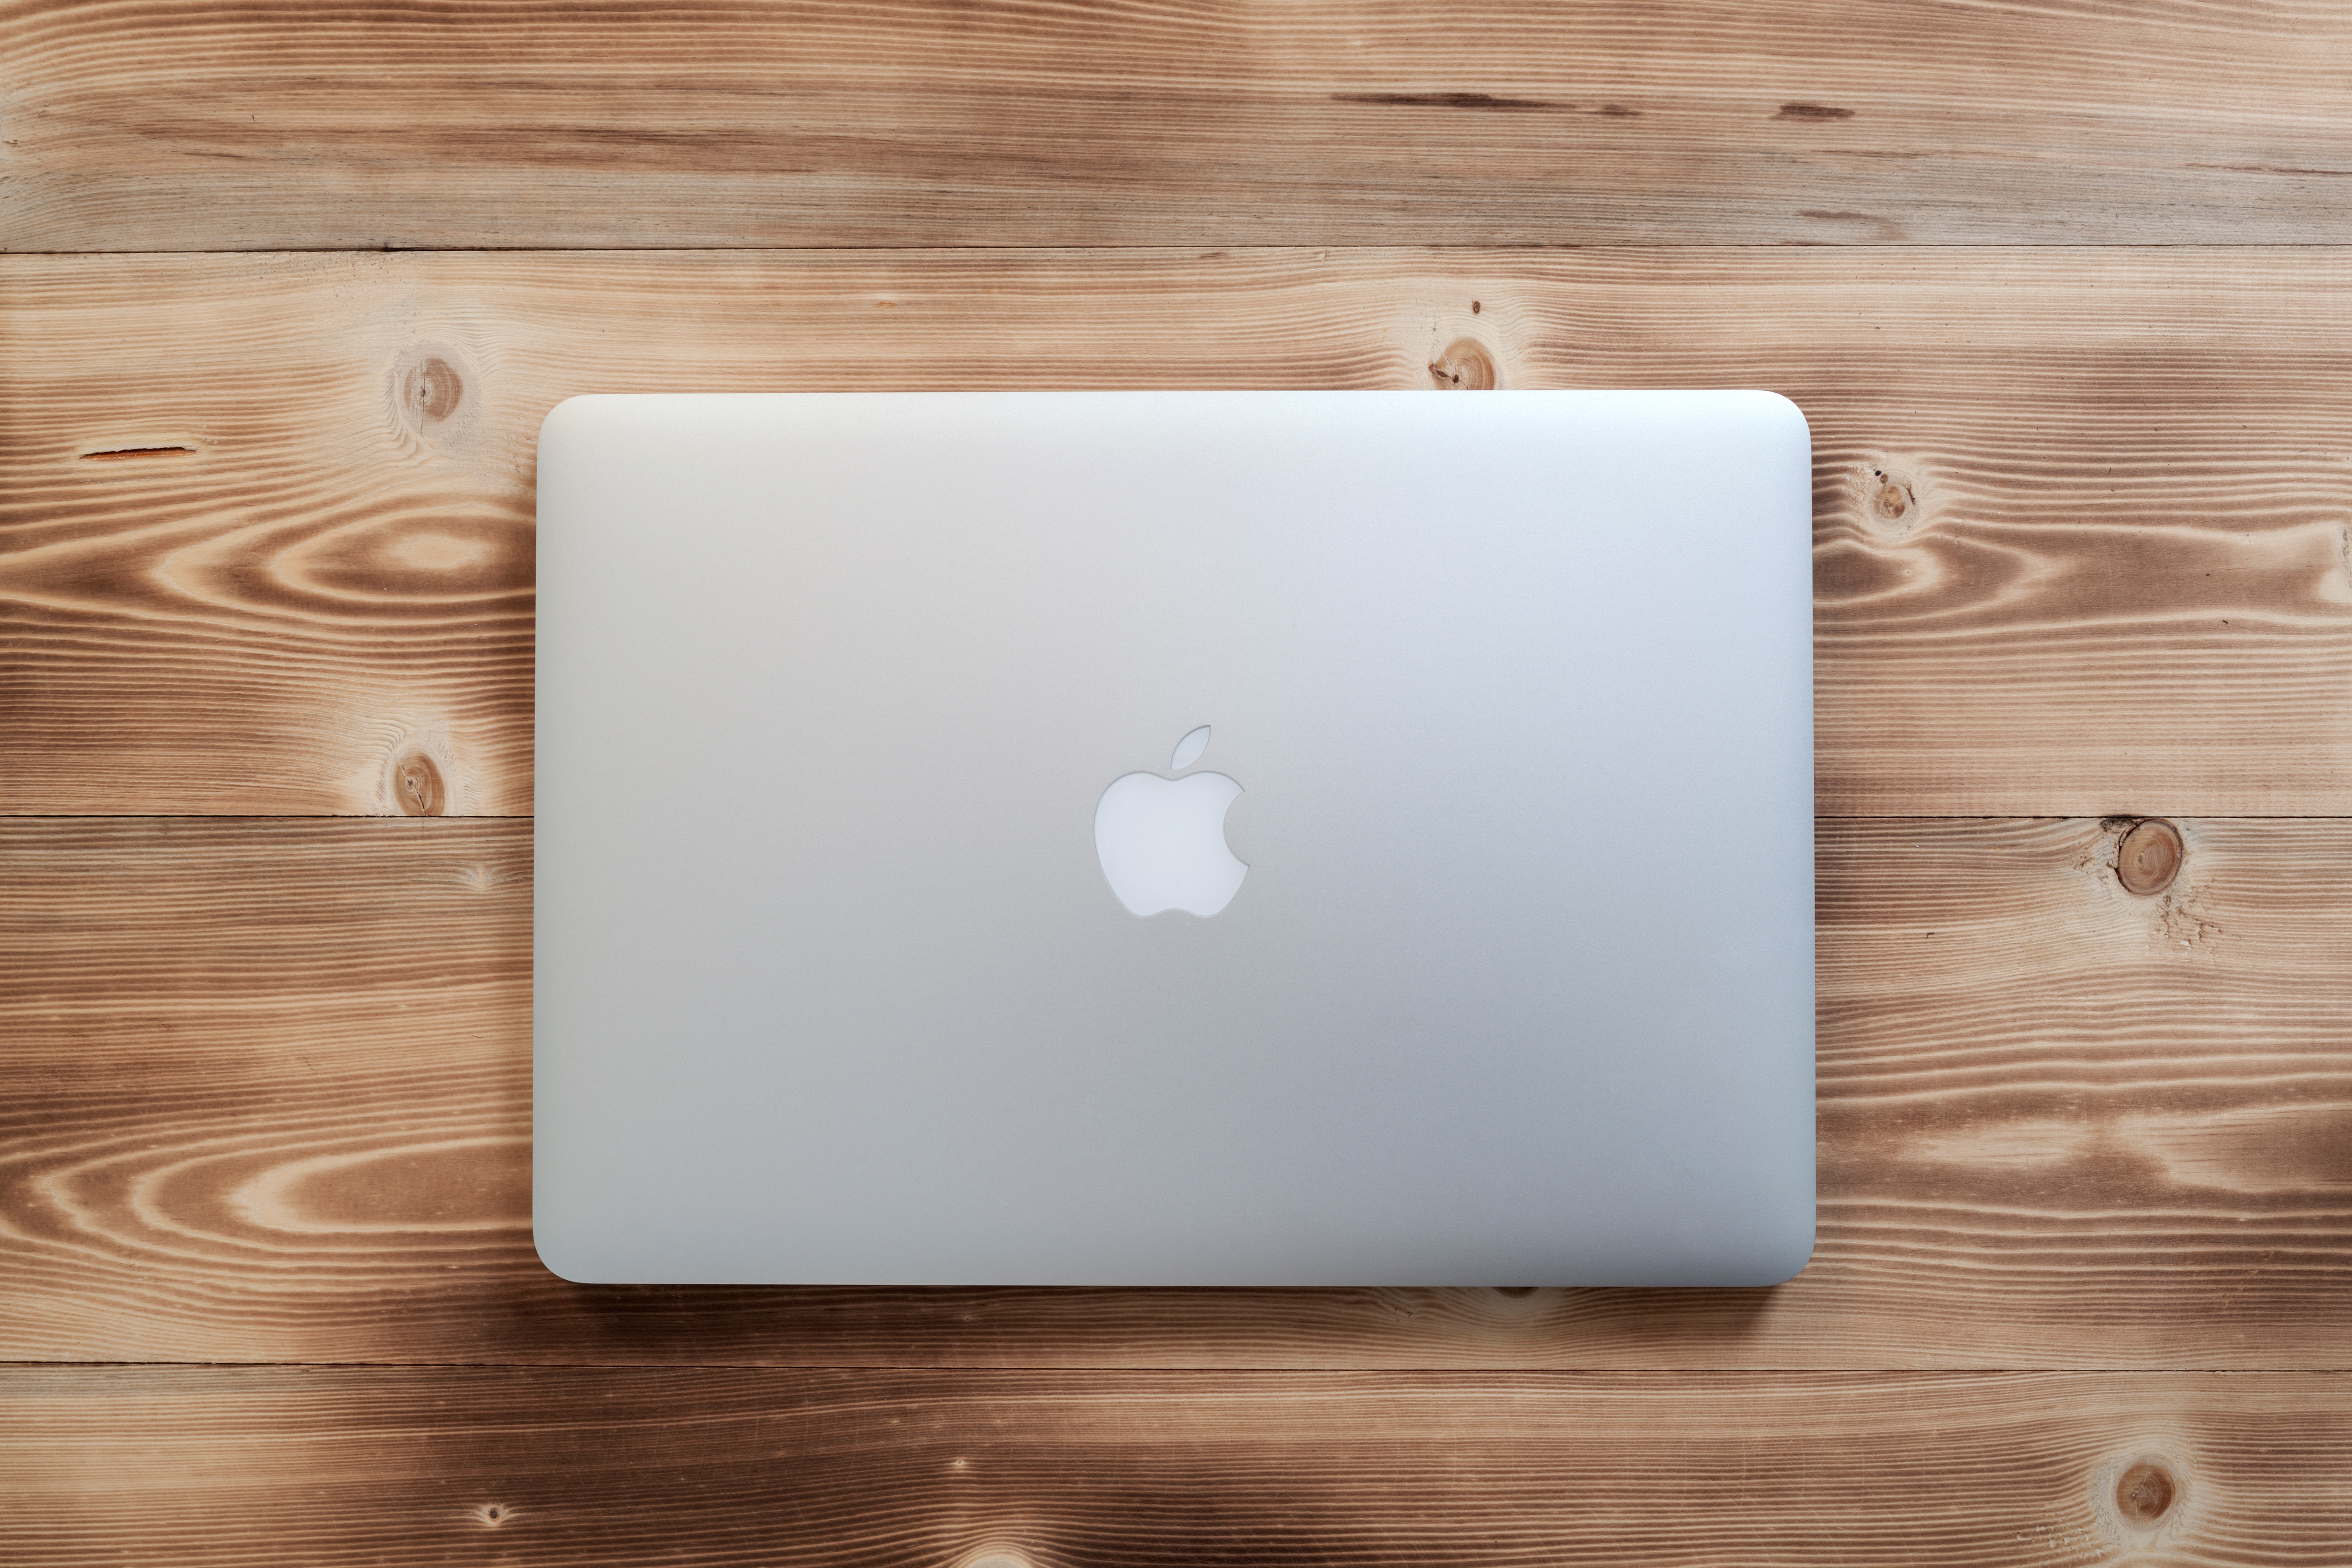   Ноутбуки Macbook Pro входят в число Appleсамый дорогой